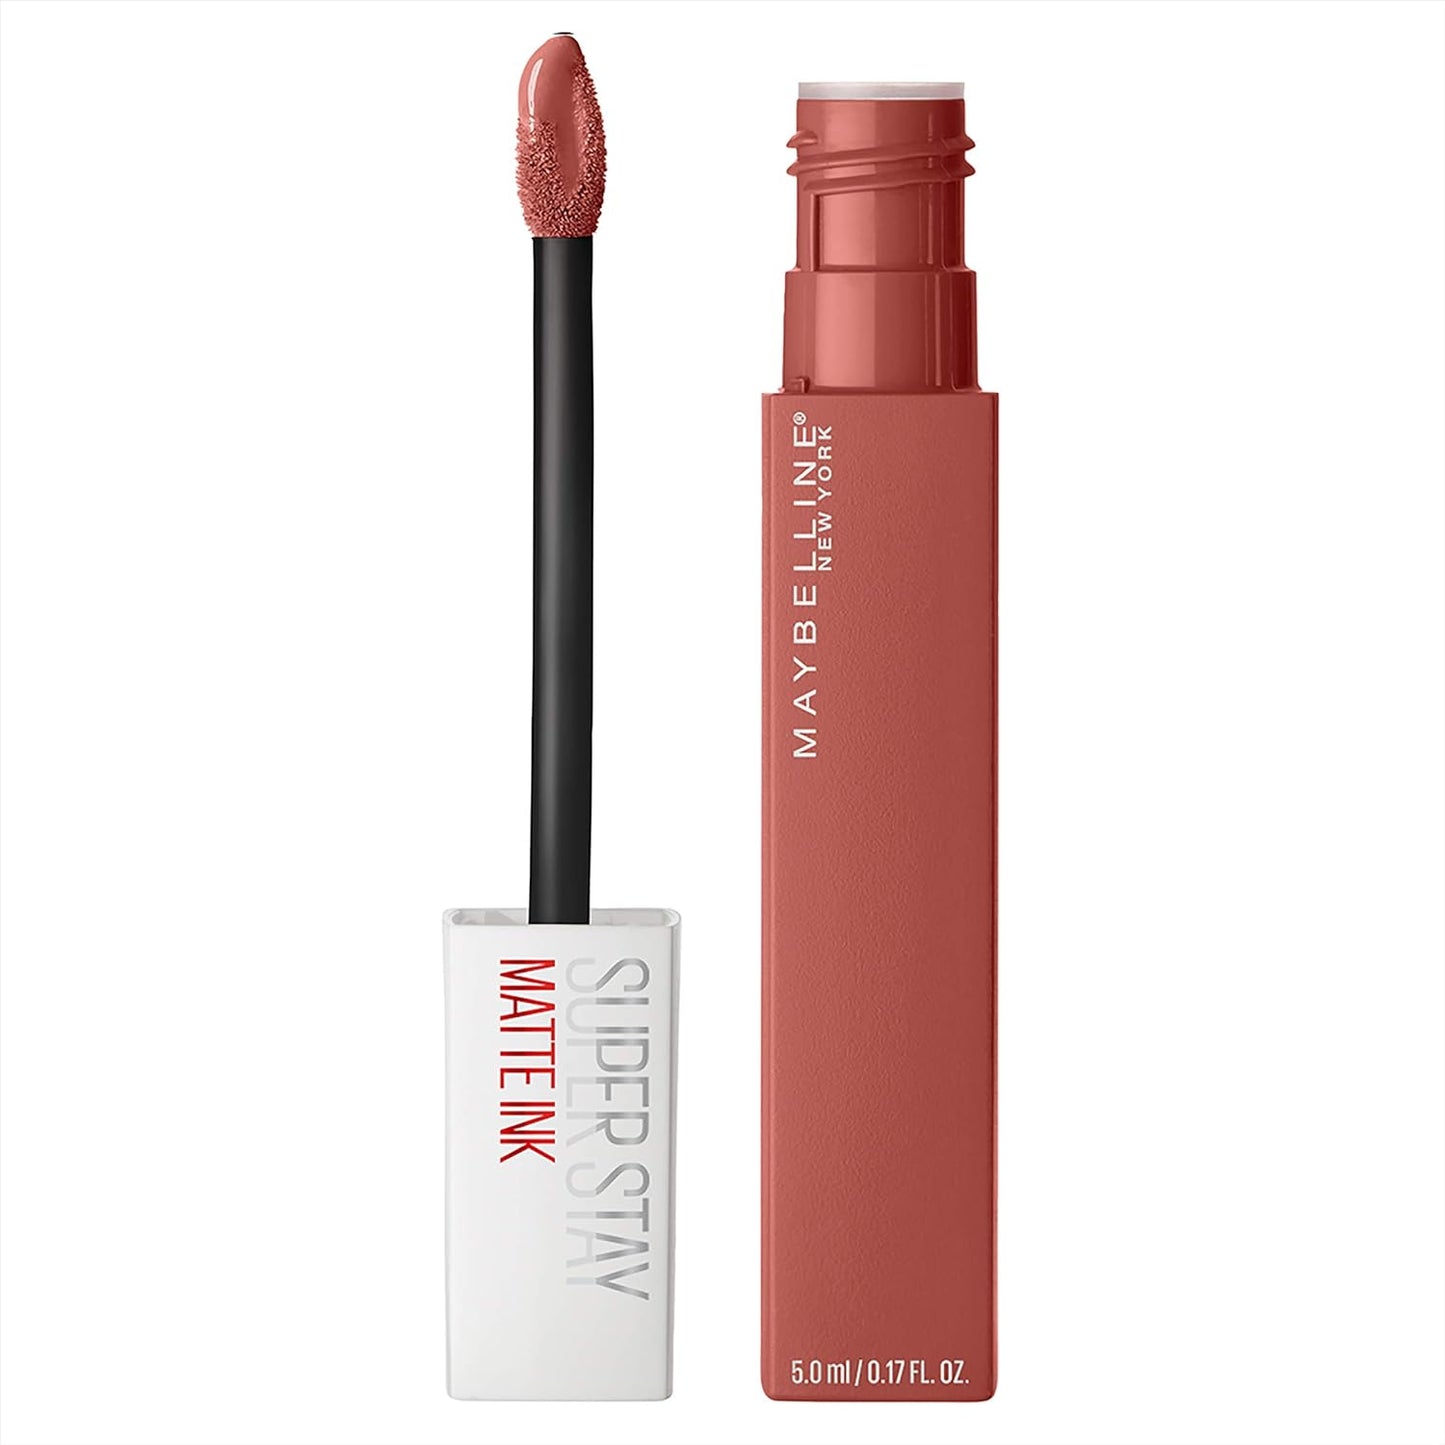 Maybelline (Thailand) Super Stay Matte Ink Liquid Lipstick 130 Selfstarter